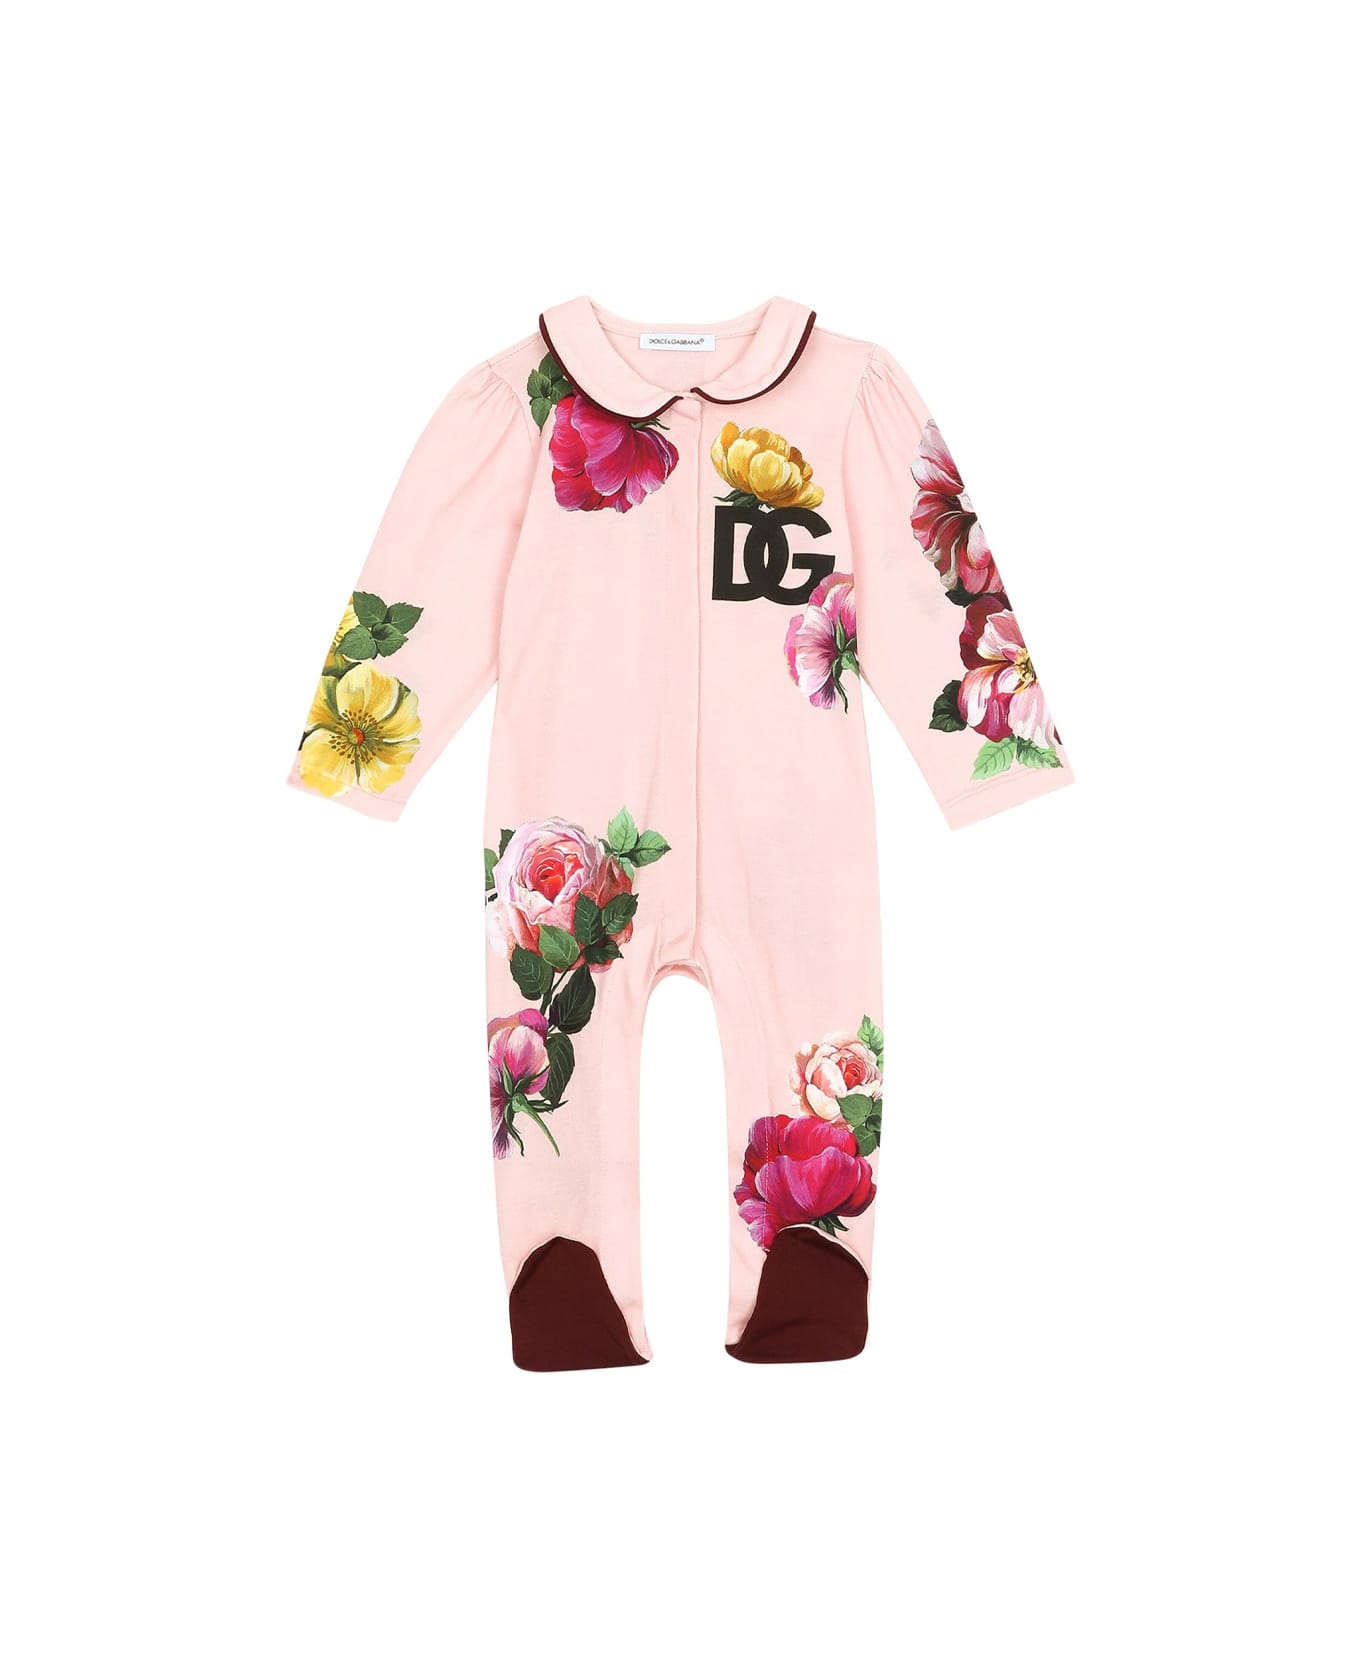 Dolce & Gabbana Floral Babysuit Set - Rose